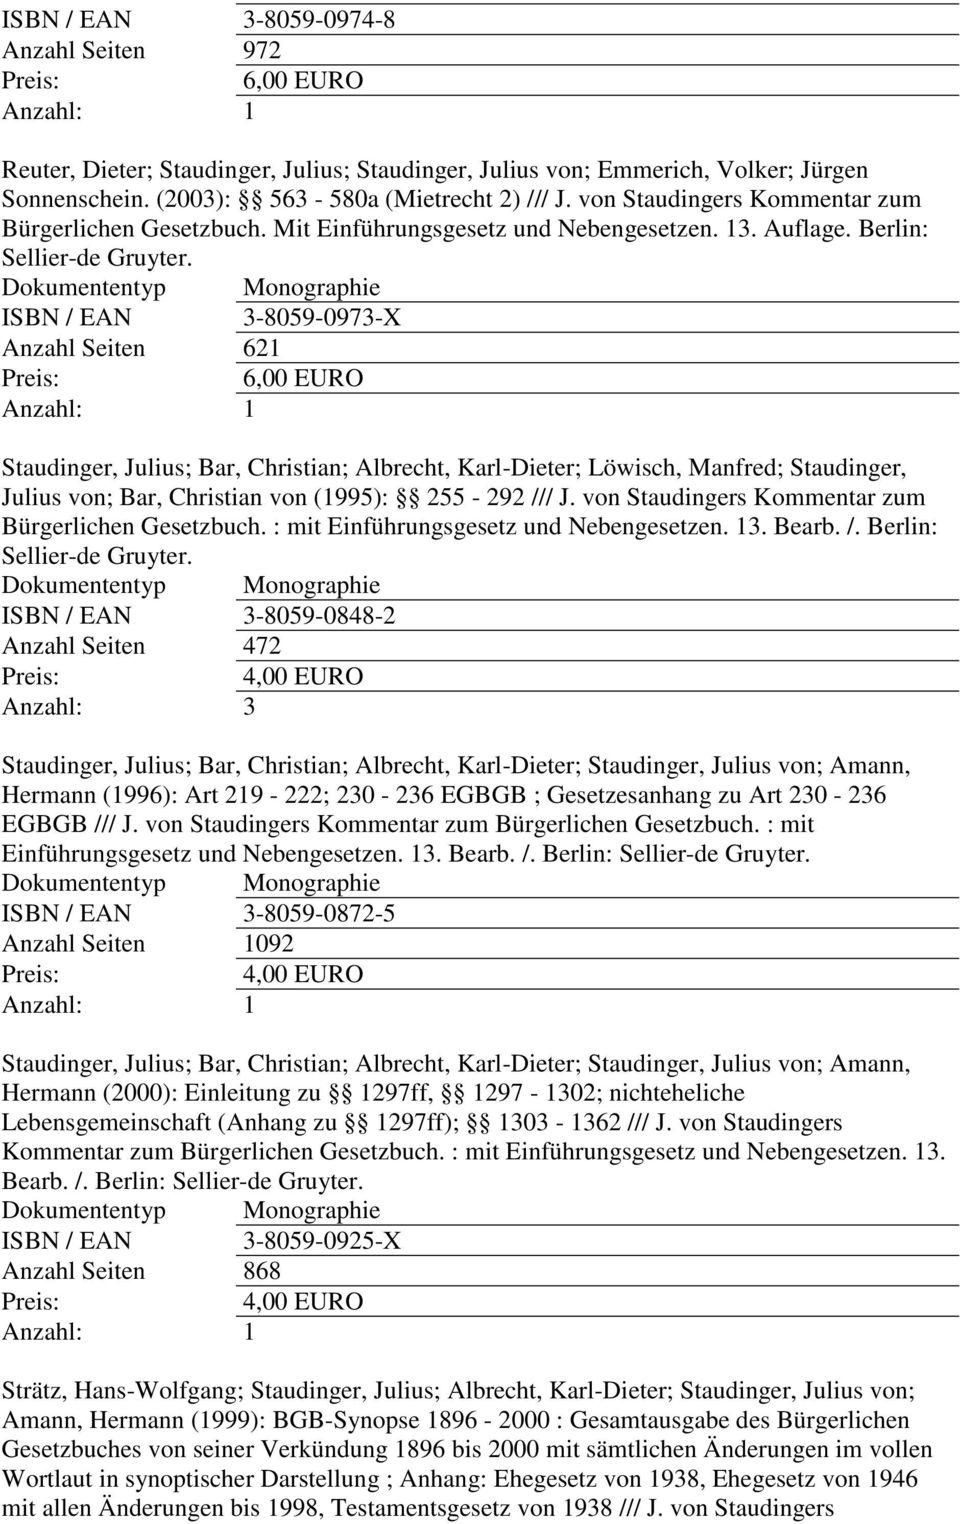 ISBN / EAN 3-8059-0973-X Anzahl Seiten 621 Staudinger, Julius; Bar, Christian; Albrecht, Karl-Dieter; Löwisch, Manfred; Staudinger, Julius von; Bar, Christian von (1995): 255-292 /// J.